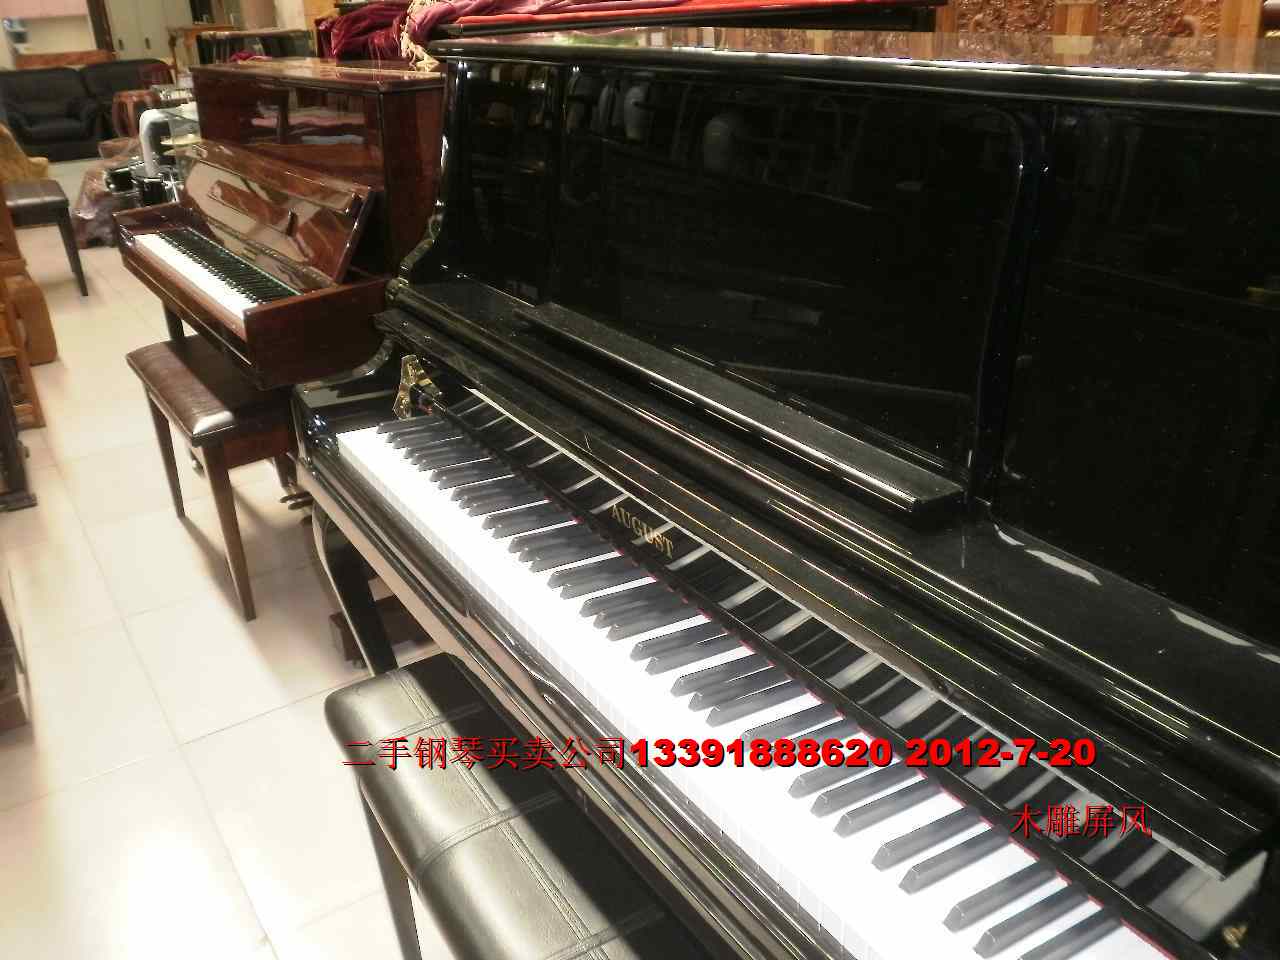 雅马哈钢琴 卡哇伊钢琴星海钢琴珠江钢琴批发 钢琴出售租赁